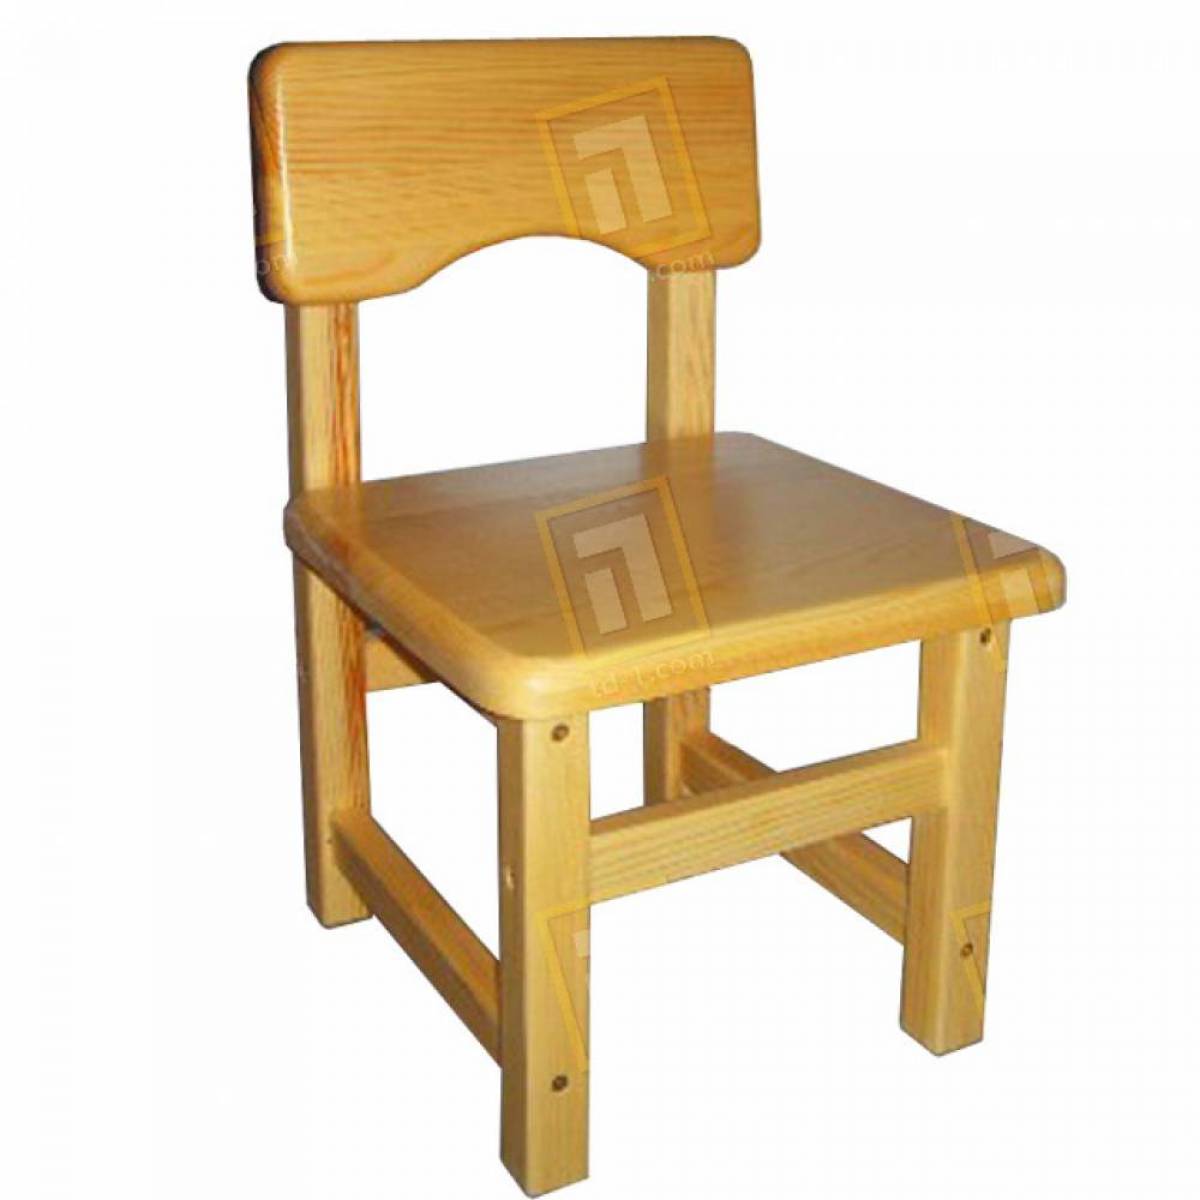 М-561 стул регулируемый детский массив сосны гр.1-2-3